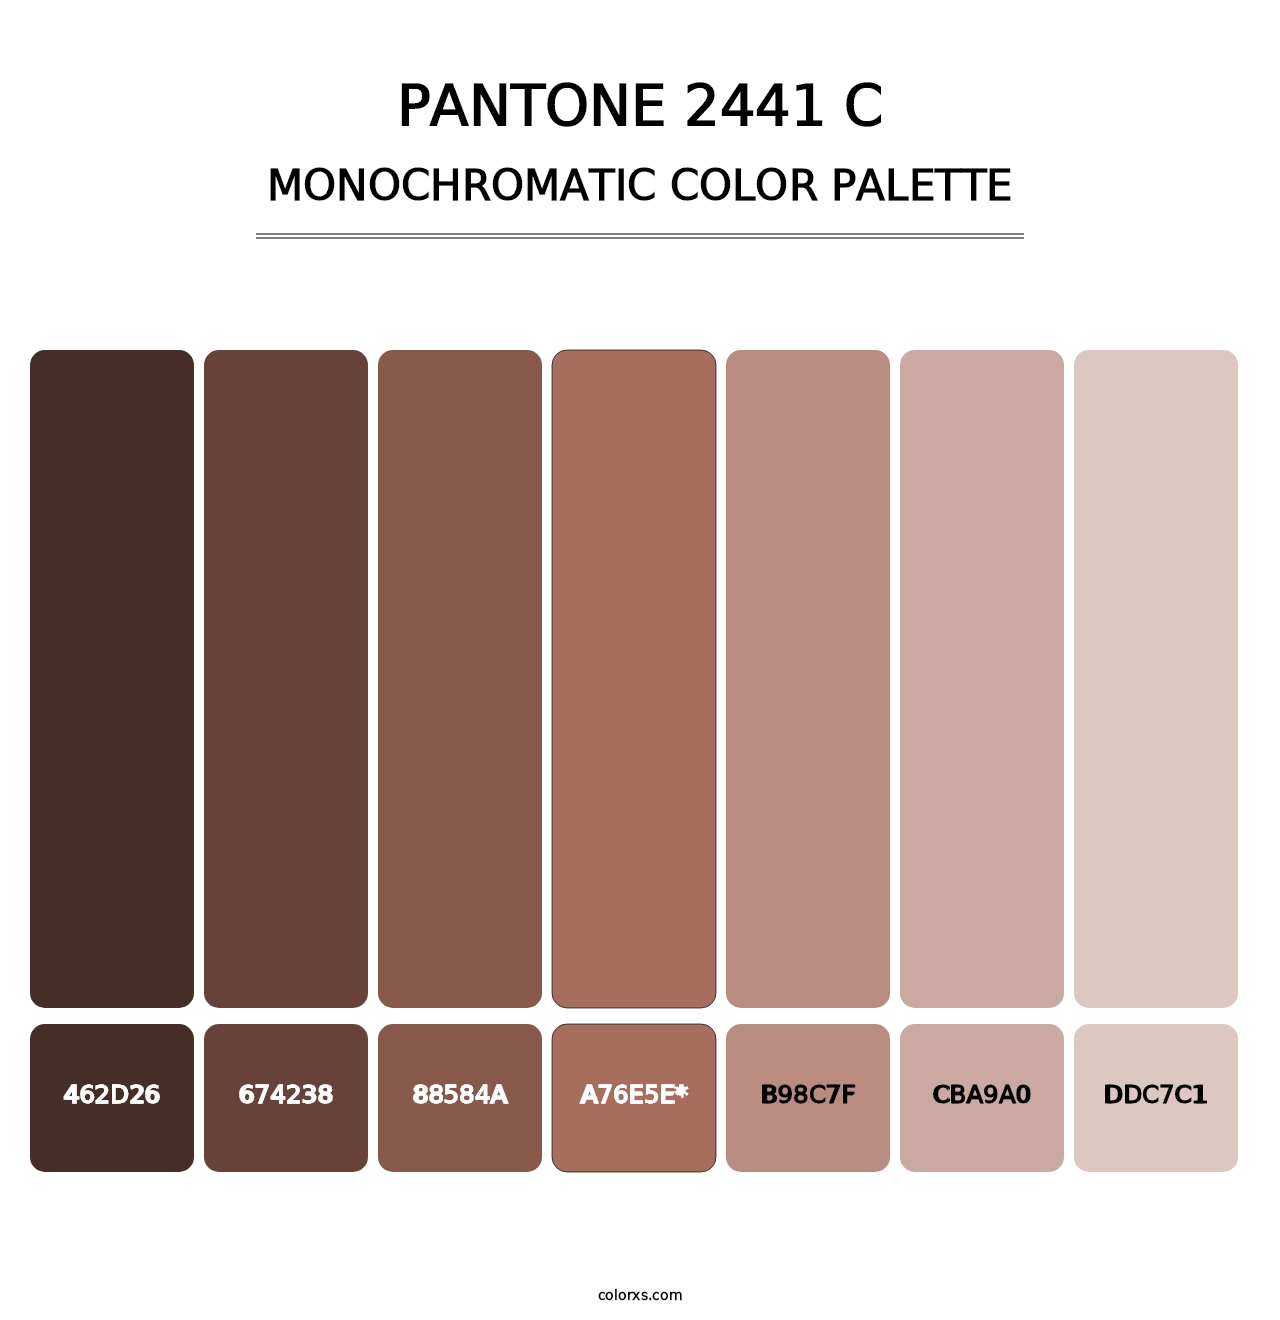 PANTONE 2441 C - Monochromatic Color Palette